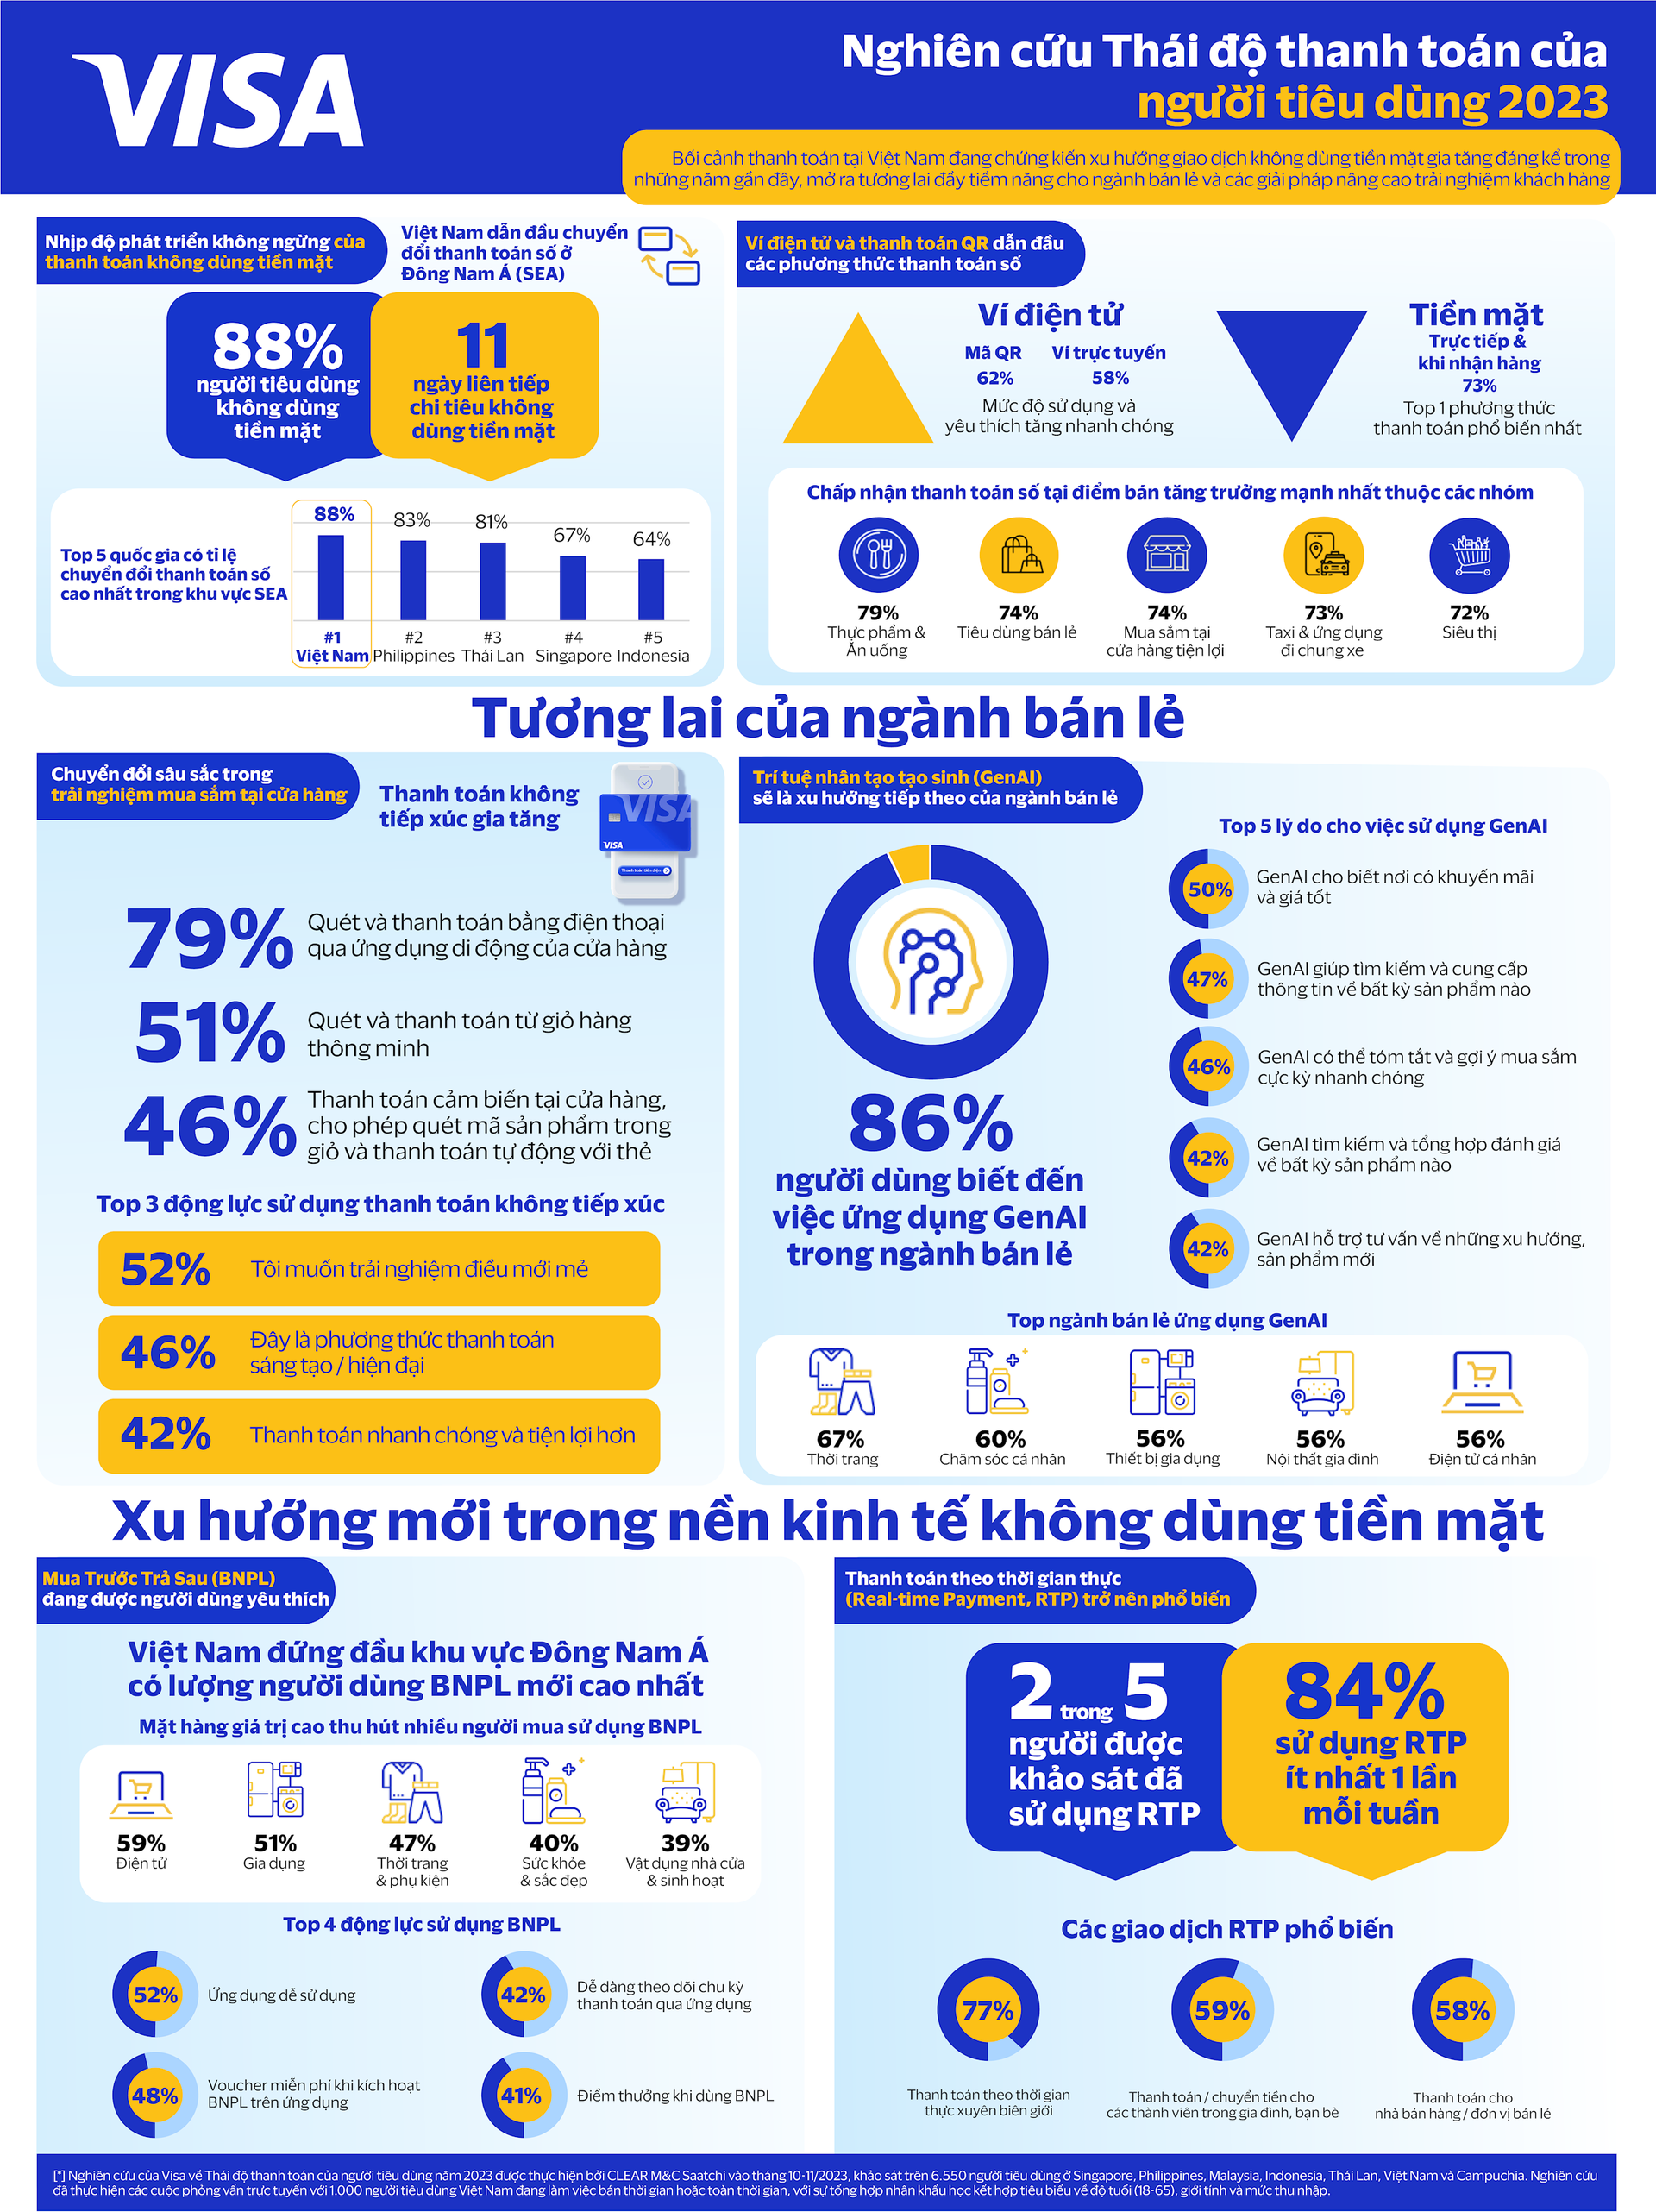 vie-infographic-lan-song-khong-dung-tien-mat-tai-viet-nam.png